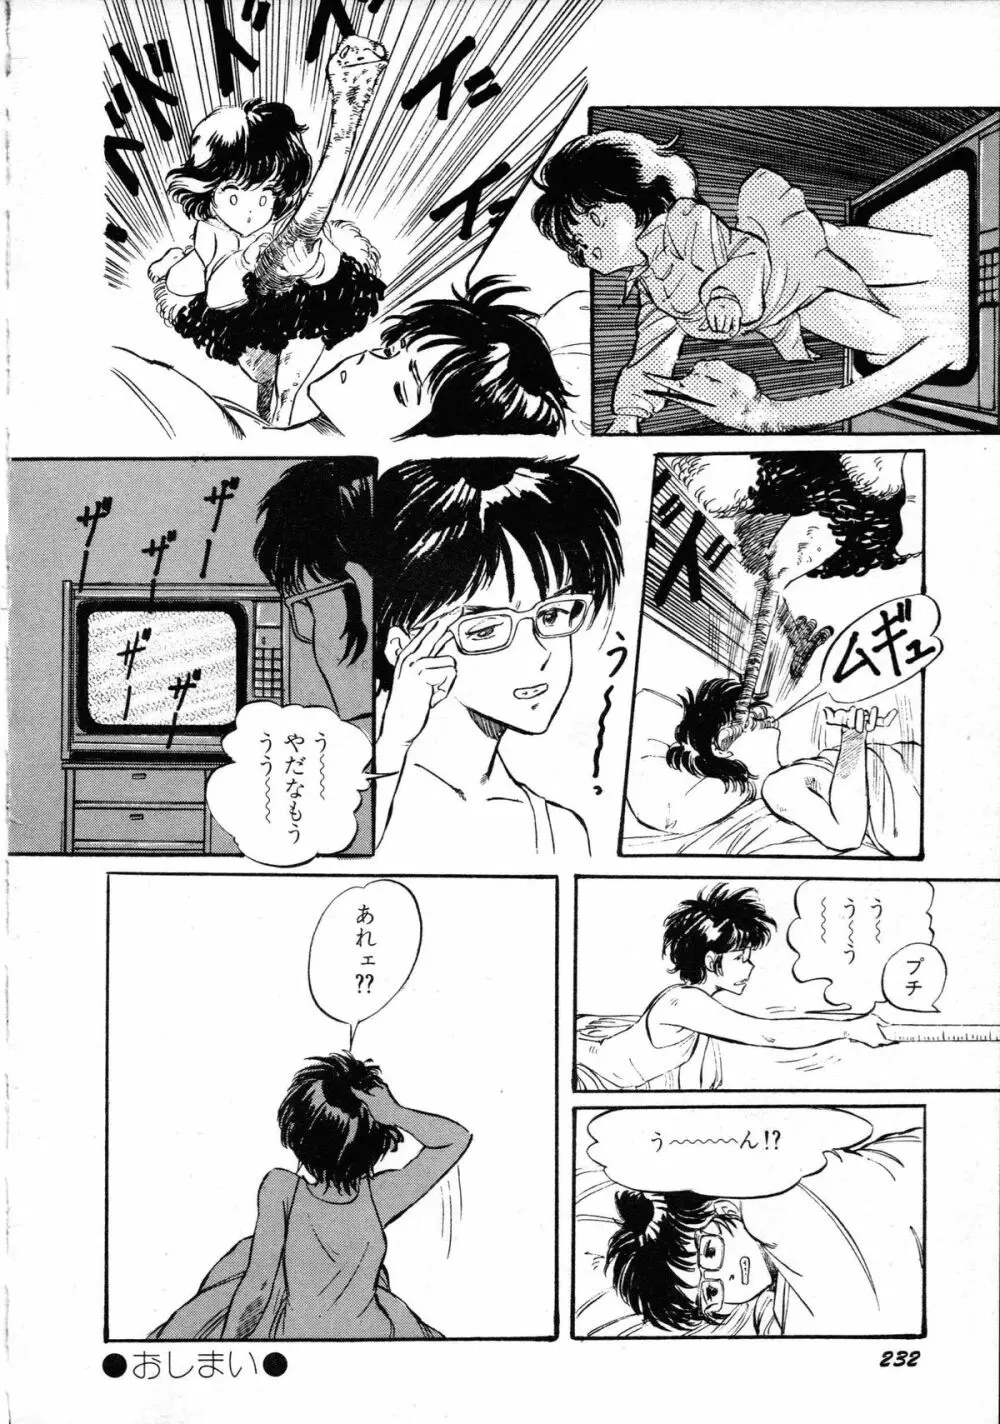 ロボット&美少女傑作選 レモン・ピープル1982-1986 236ページ